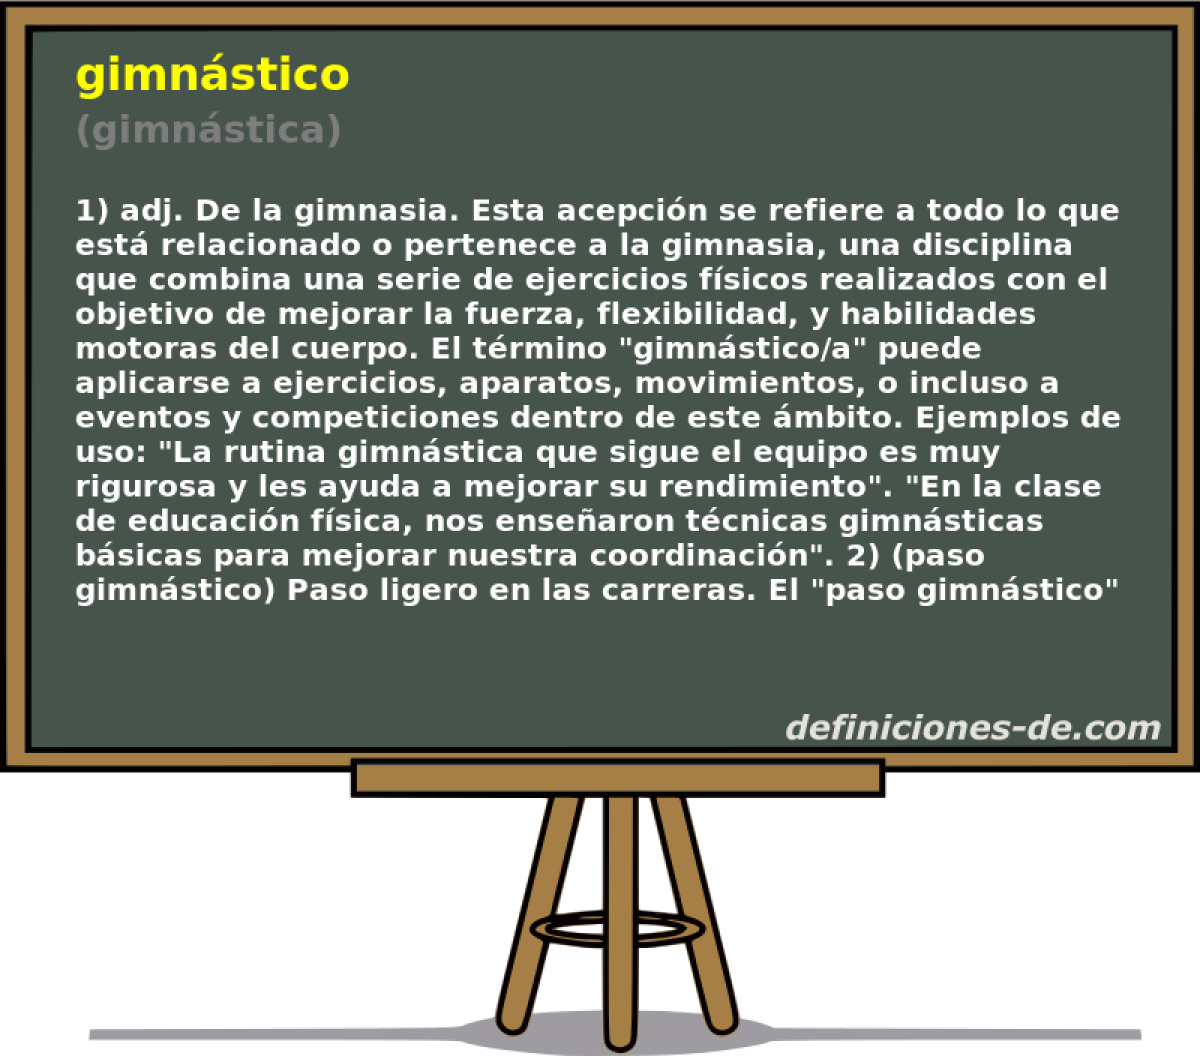 gimnstico (gimnstica)